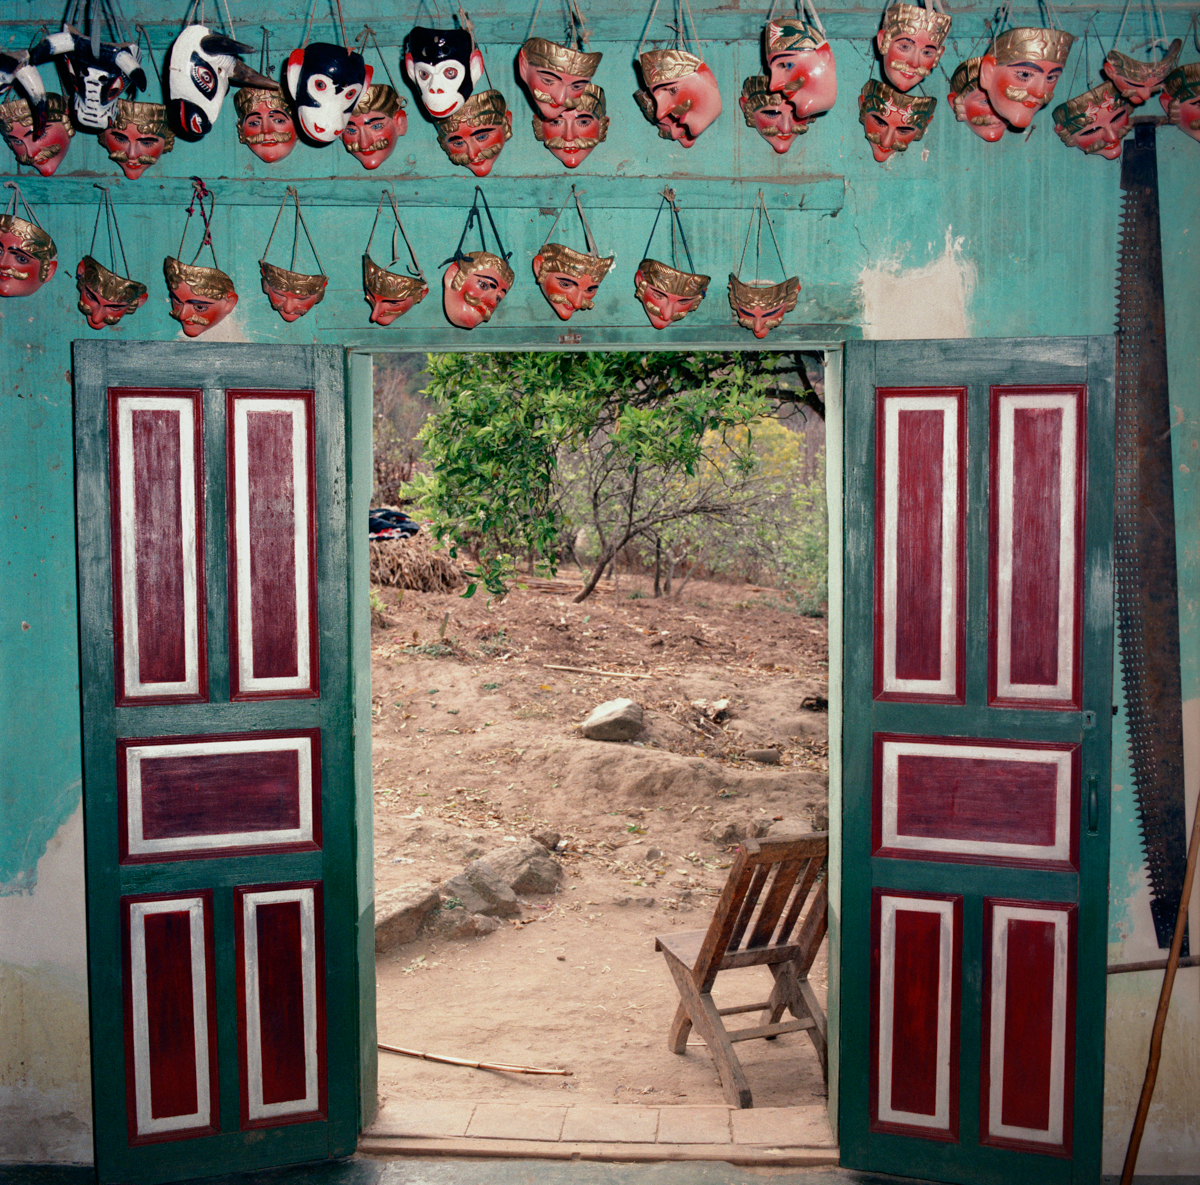 Maskmaker's Doorway, Guatemala 1986